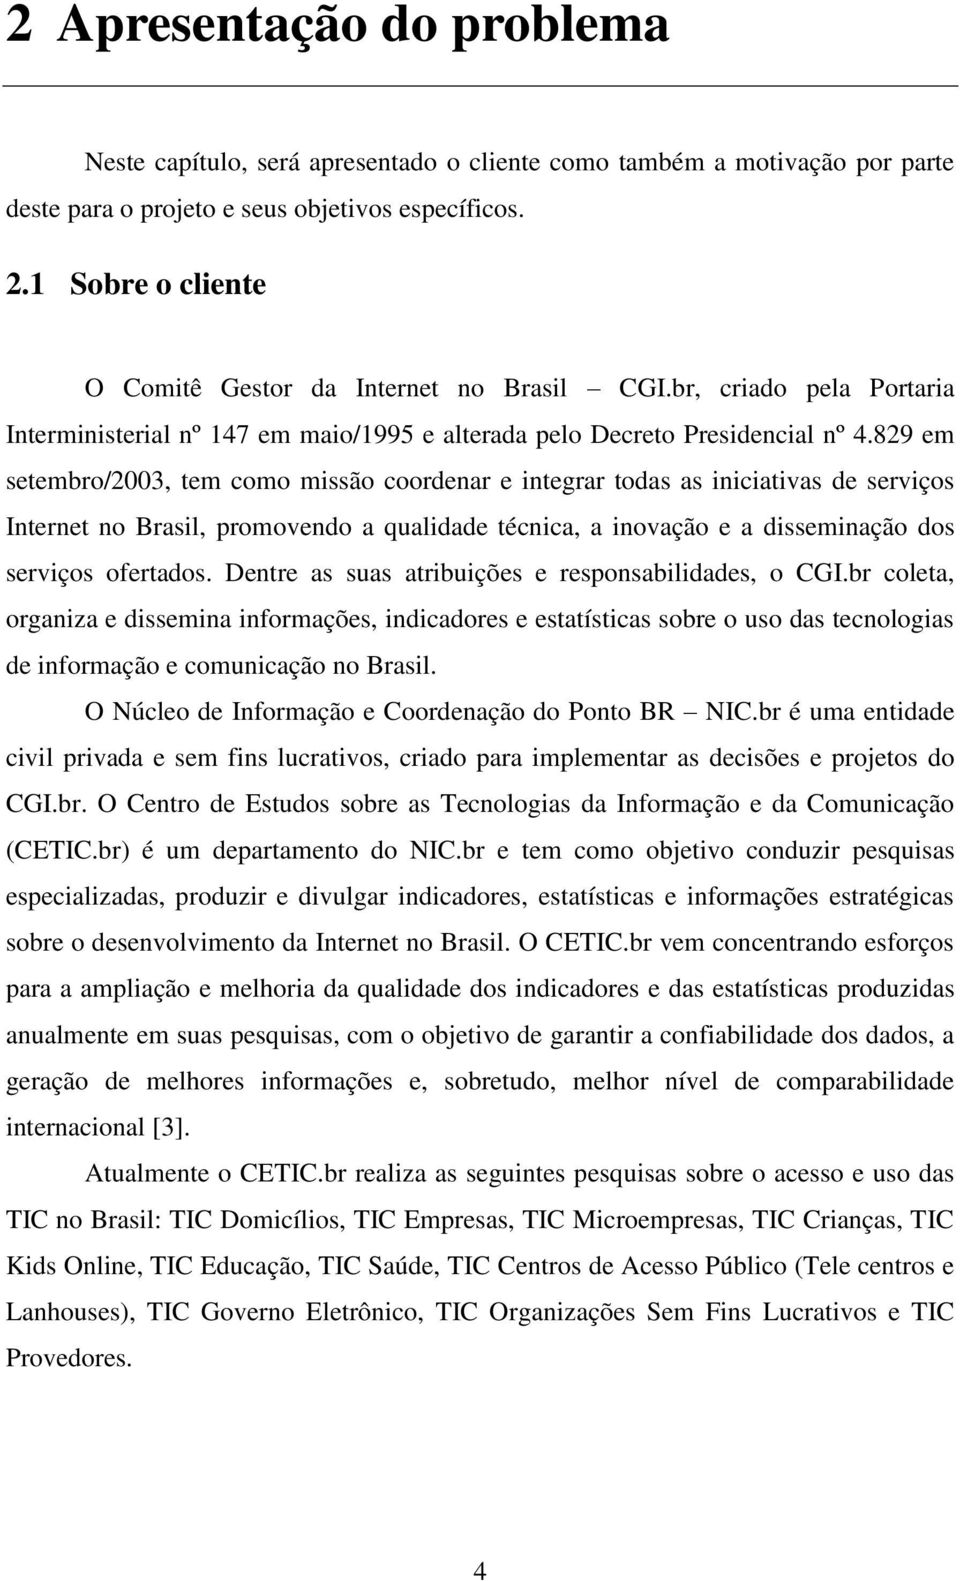 829 em setembro/2003, tem como missão coordenar e integrar todas as iniciativas de serviços Internet no Brasil, promovendo a qualidade técnica, a inovação e a disseminação dos serviços ofertados.